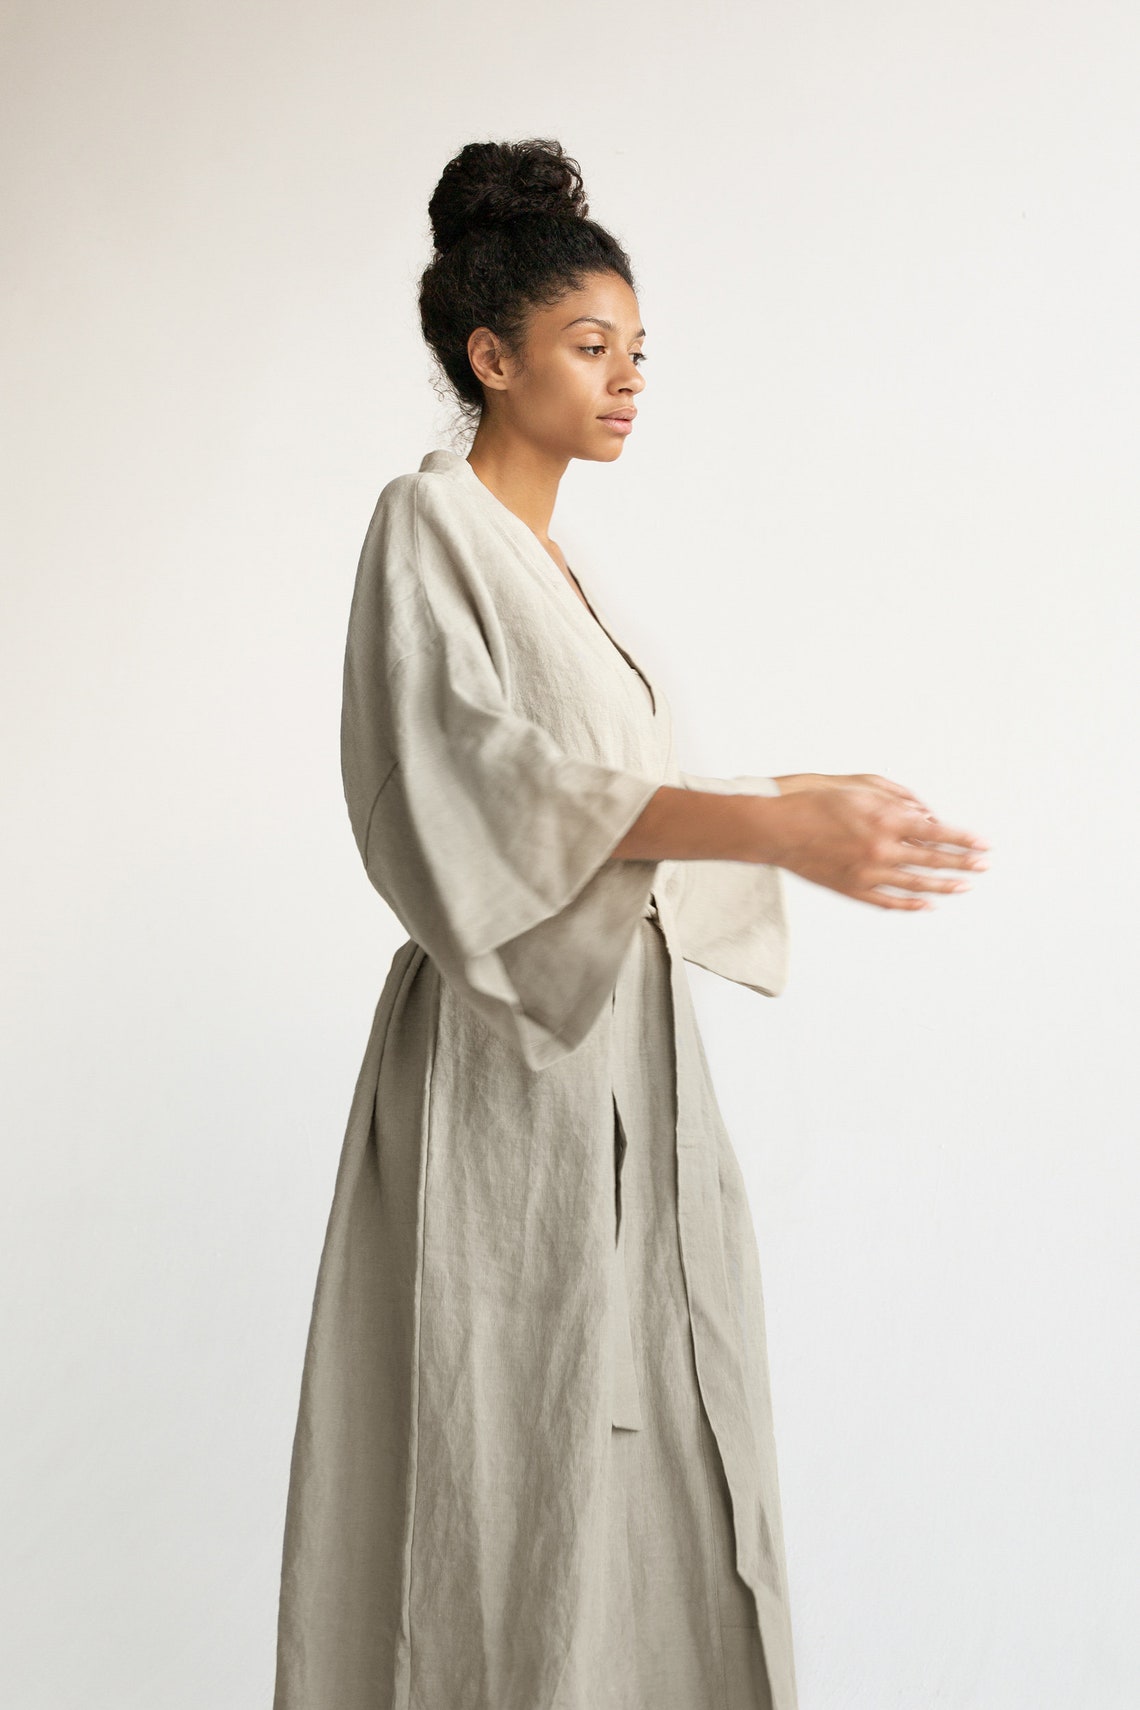 Kimono robe in Light Beige color / Stonewashed Linen Kimono / | Etsy